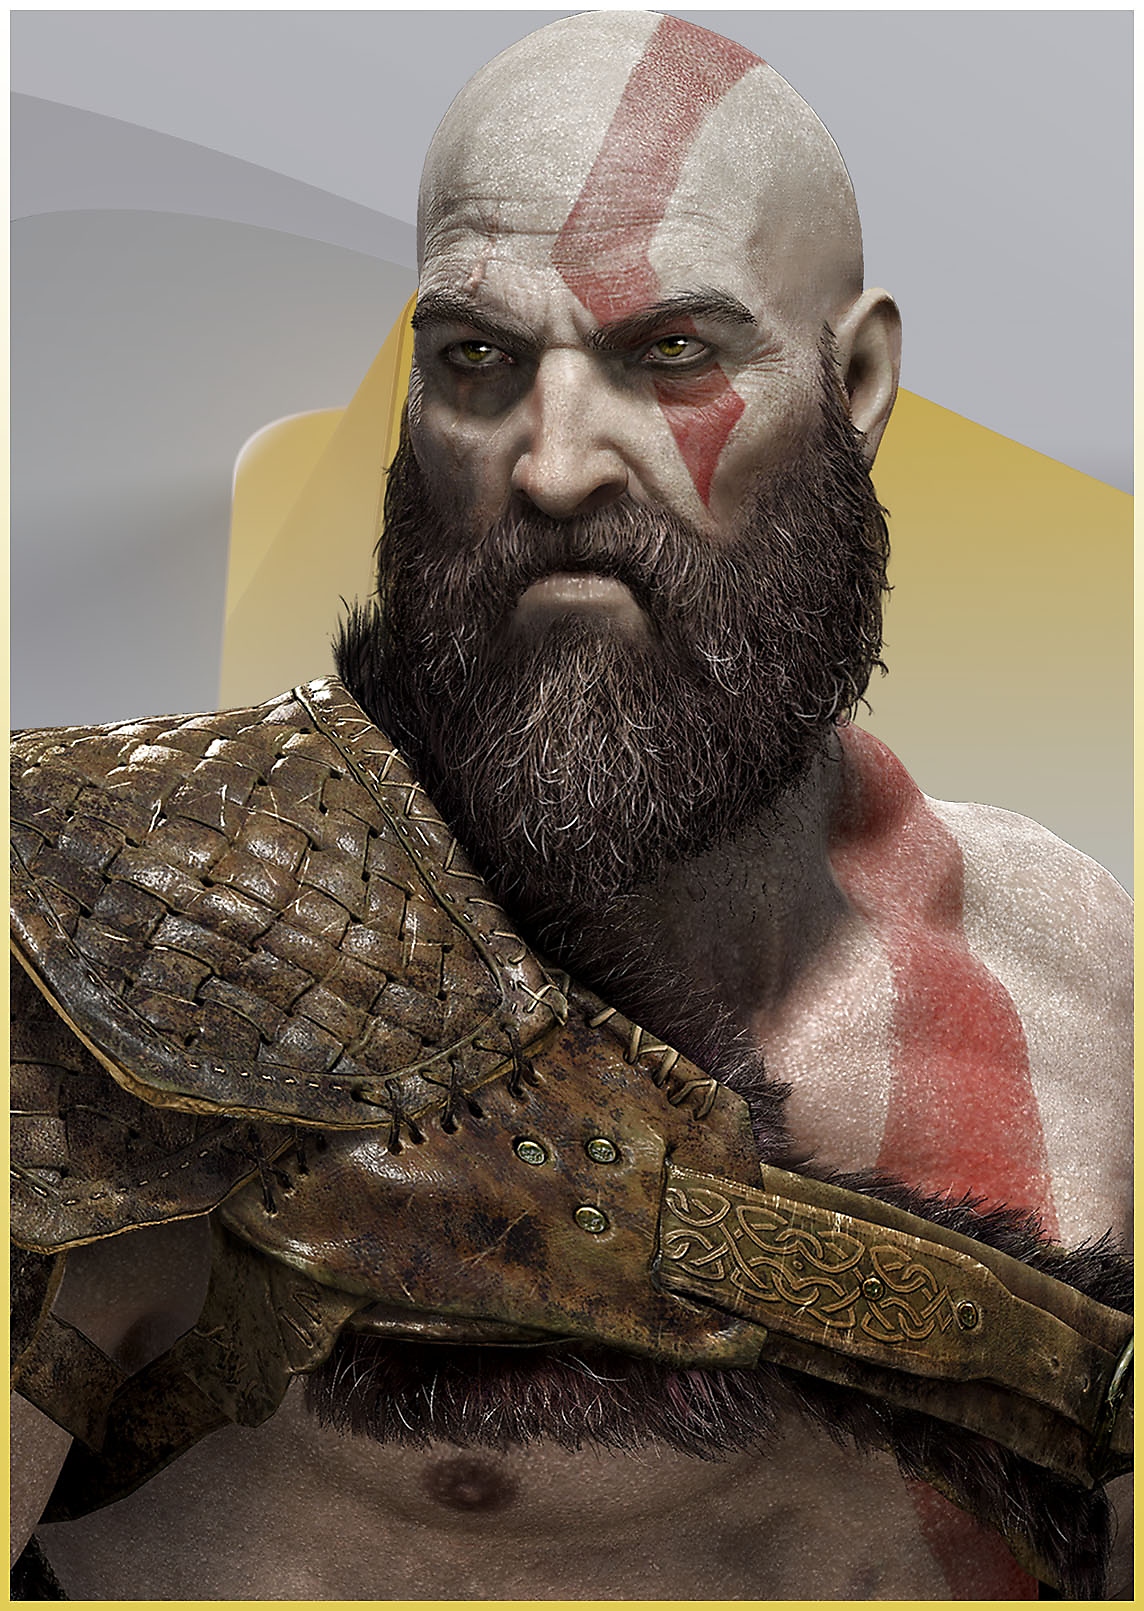 Kratos uit God of War ziet er boos uit